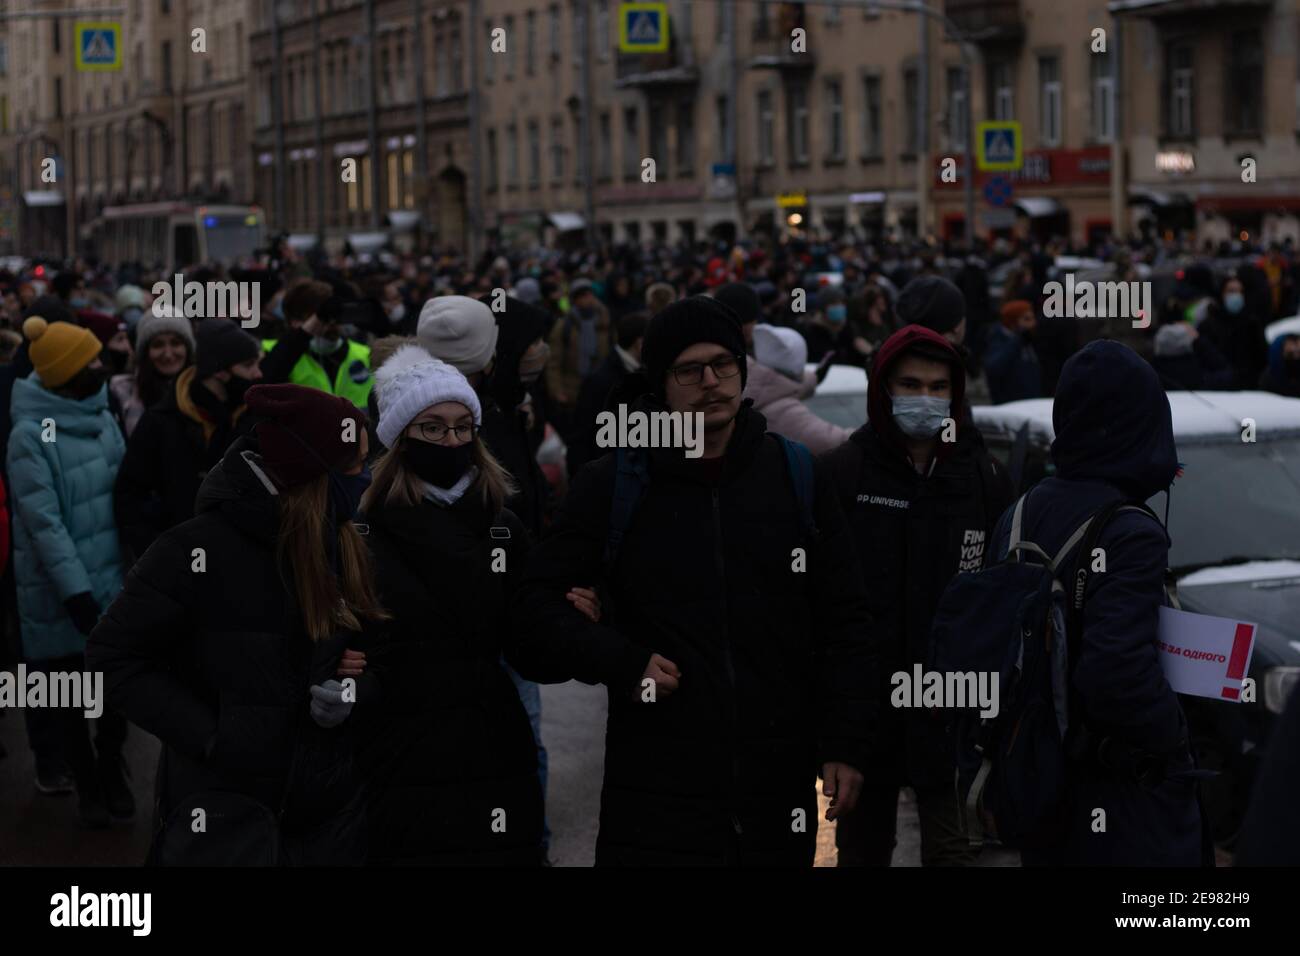 Saint-Pétersbourg, Russie - 31 janvier 2021 : foule de gens marchant dans la rue, Editorial d'illustration Banque D'Images